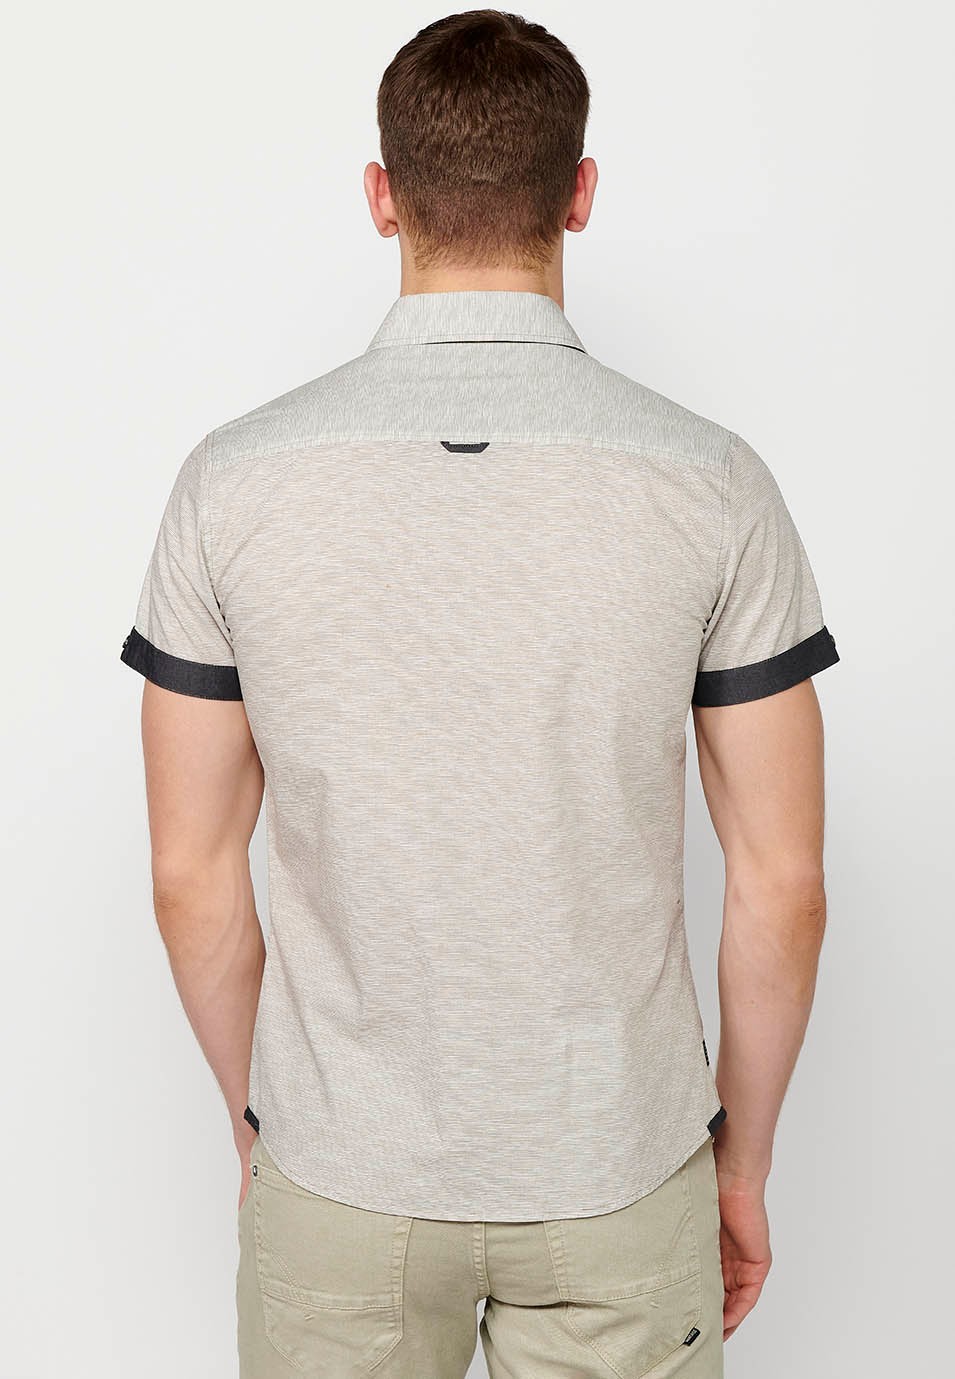 Camisa de manga corta de algodon, con botones, color gris para hombre